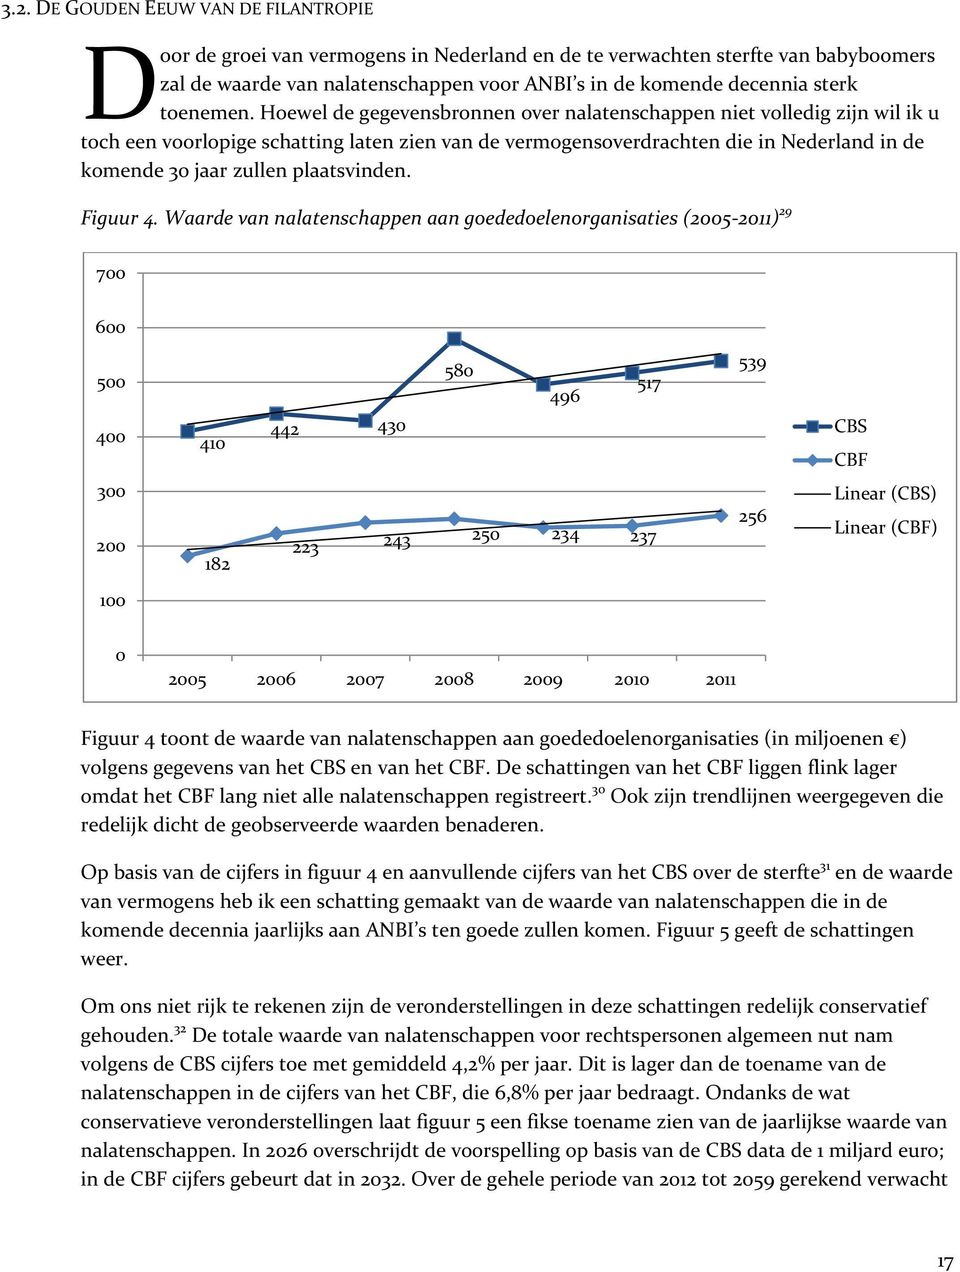 Hoewel de gegevensbronnen over nalatenschappen niet volledig zijn wil ik u toch een voorlopige schatting laten zien van de vermogensoverdrachten die in Nederland in de komende 30 jaar zullen